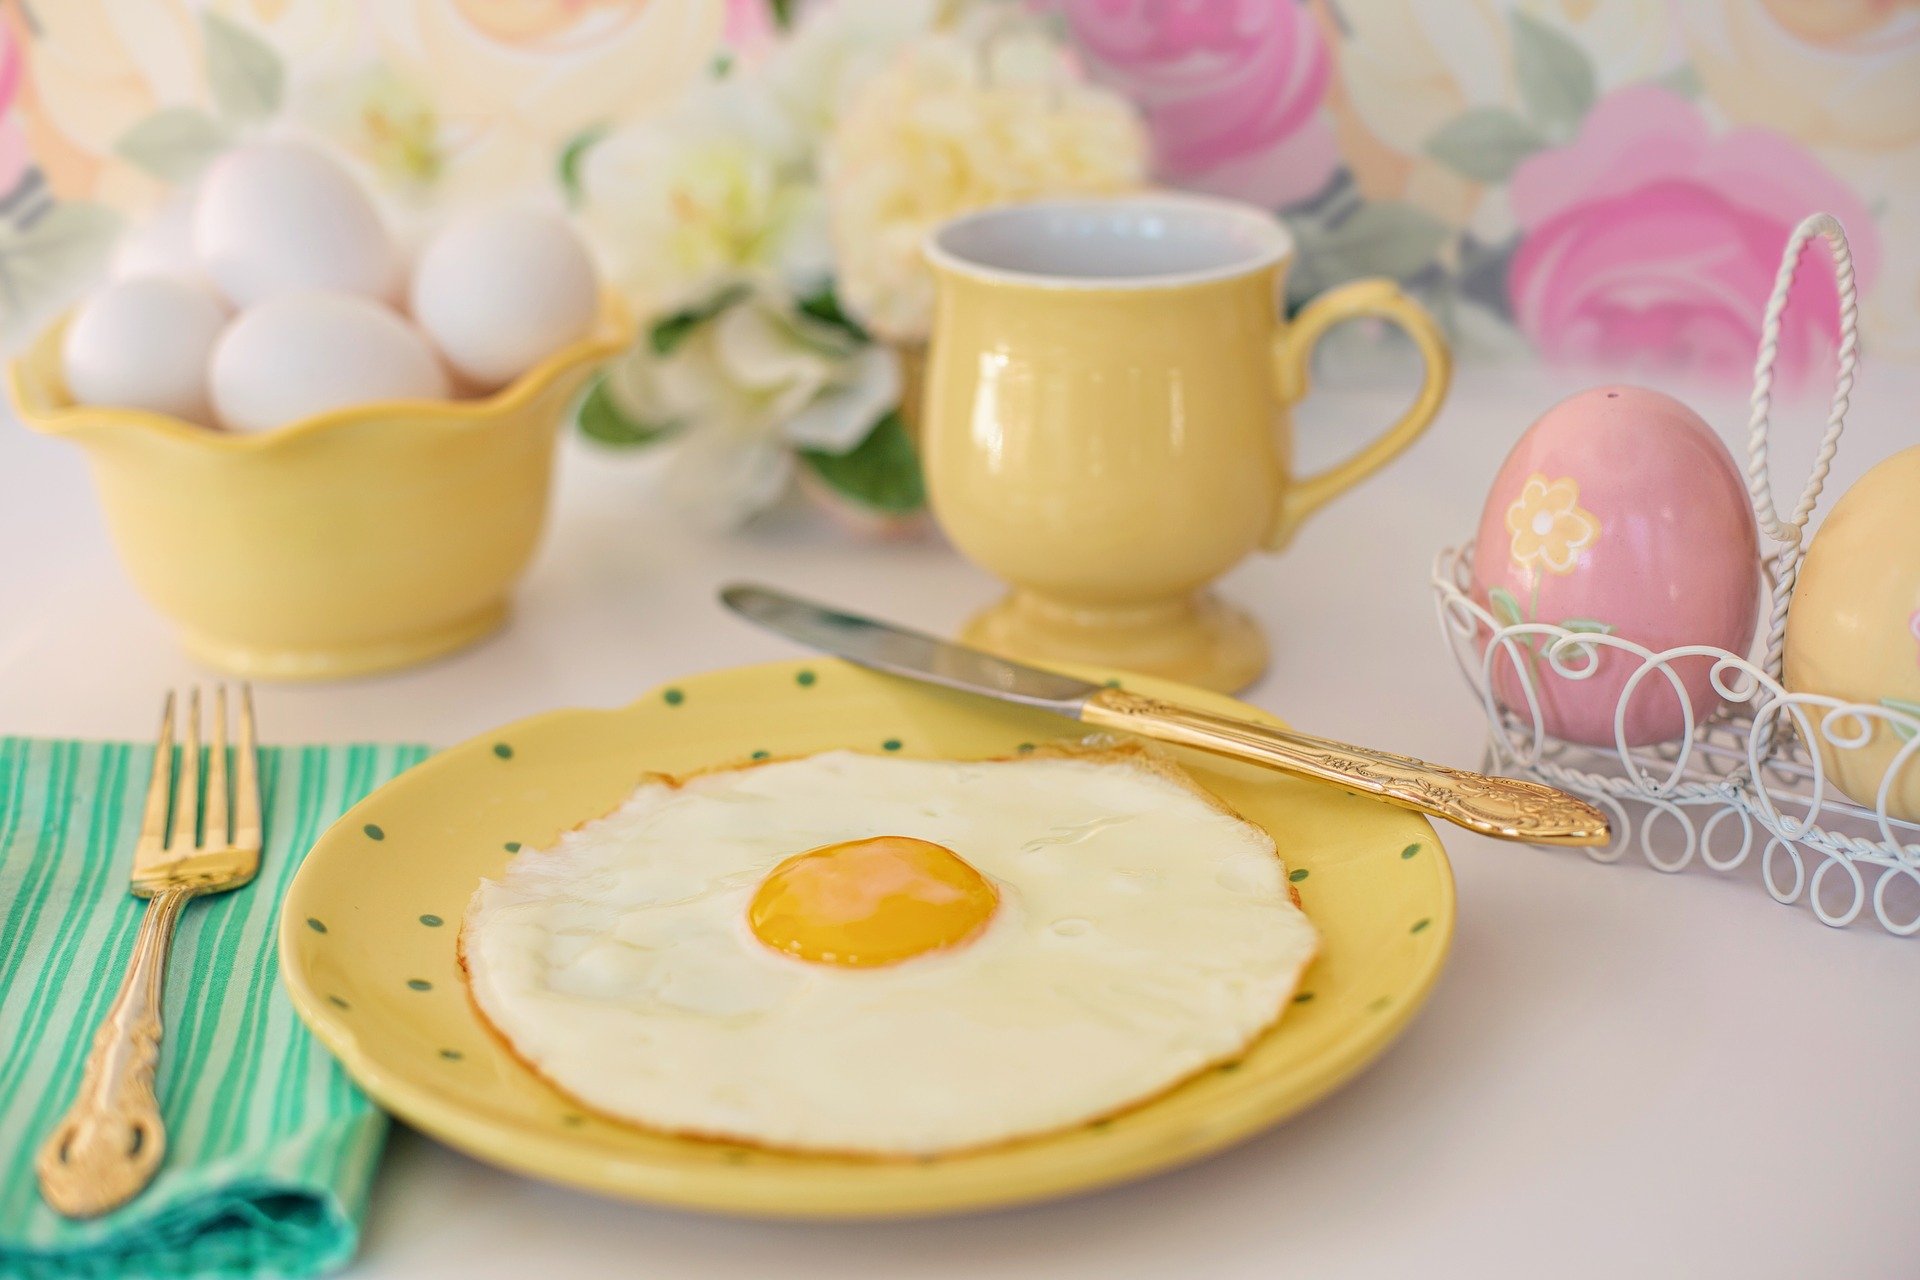 Jak doma zpracováváte velikonoční vajíčka?